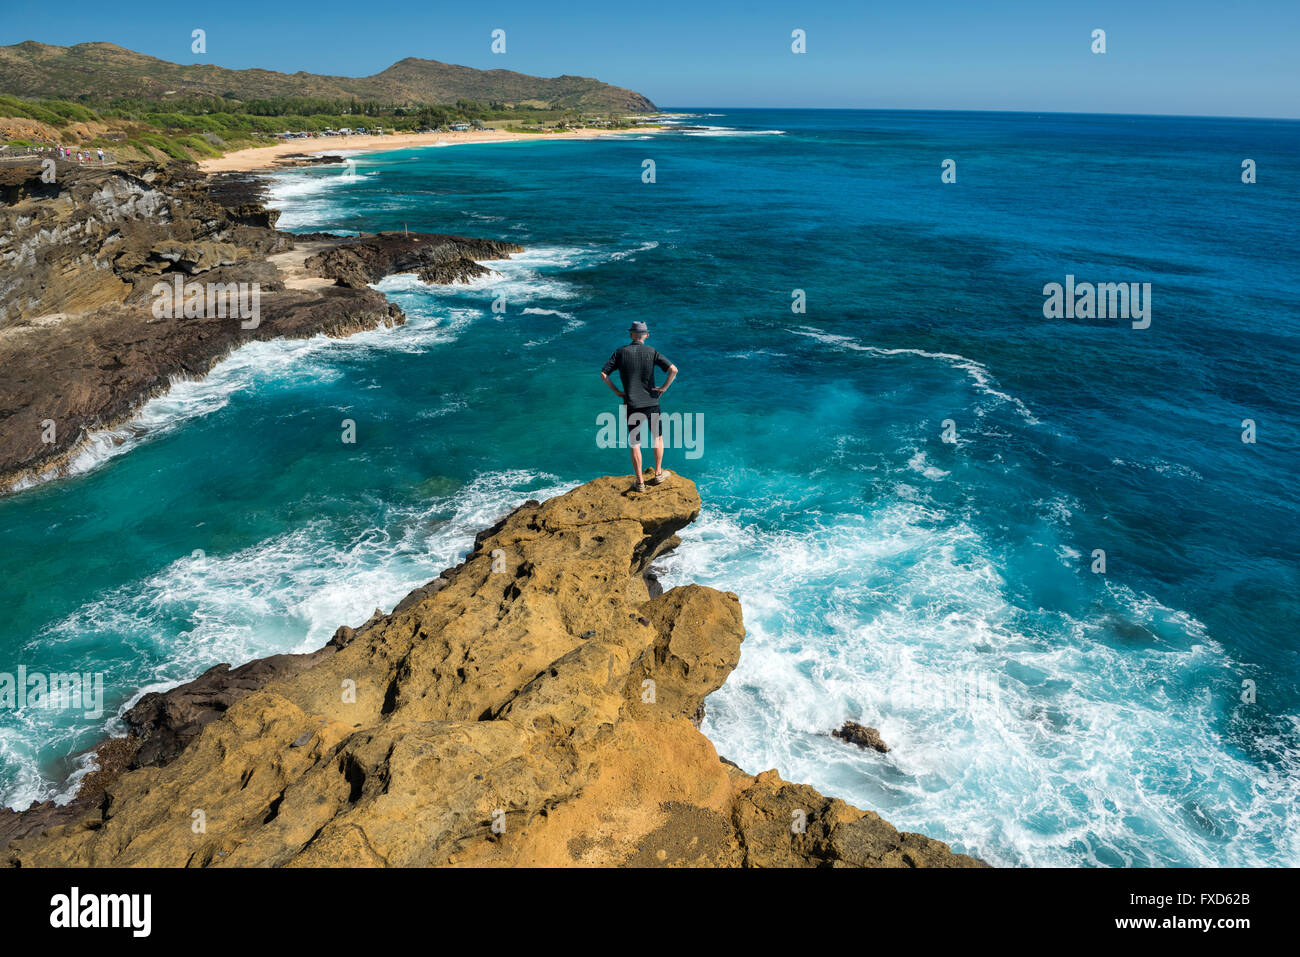 USA, Hawaii, Oahu, Honolulu, Halona Blow Hole Lookout, l'homme à l'affût Banque D'Images